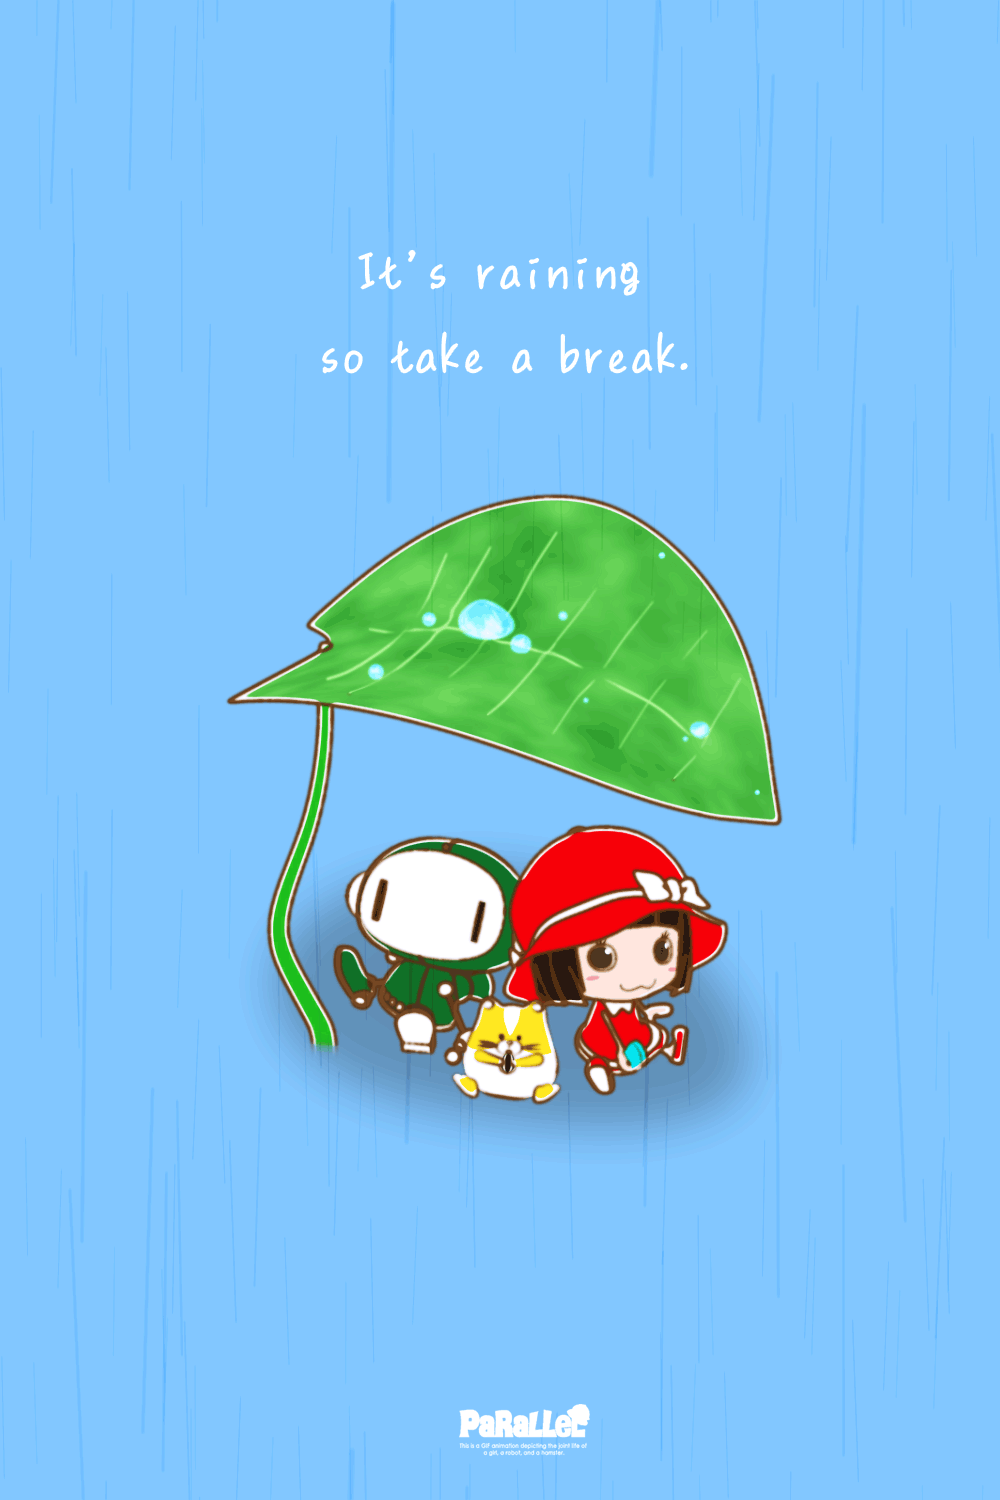 葉っぱの下で雨宿りするキャラクターのイラスト